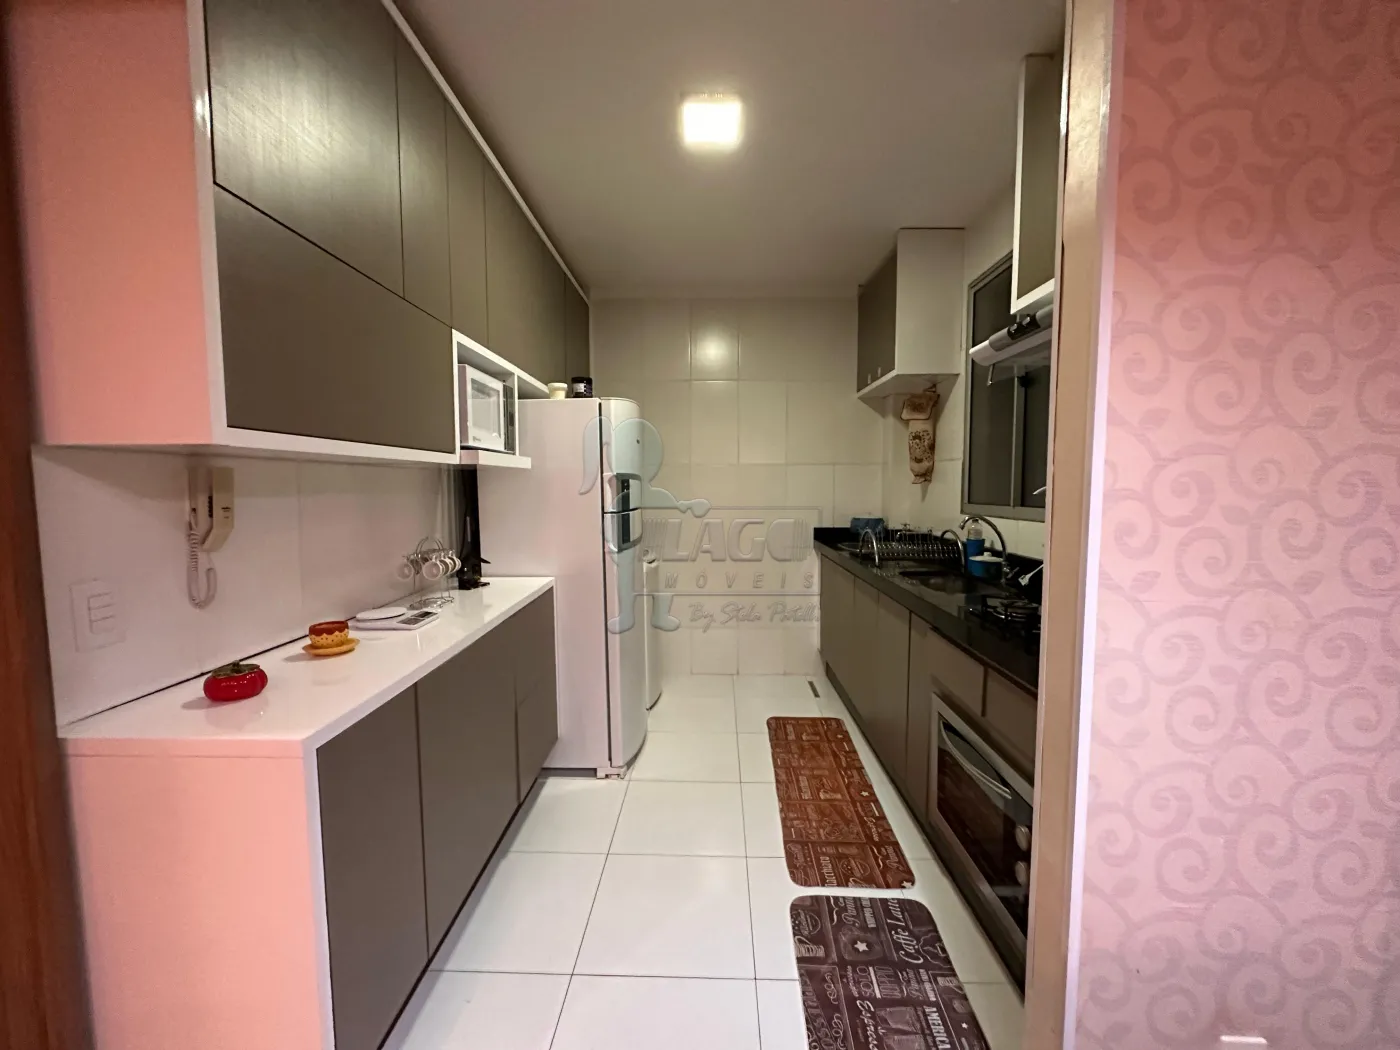 Comprar Apartamentos / Padrão em Ribeirão Preto R$ 230.000,00 - Foto 7